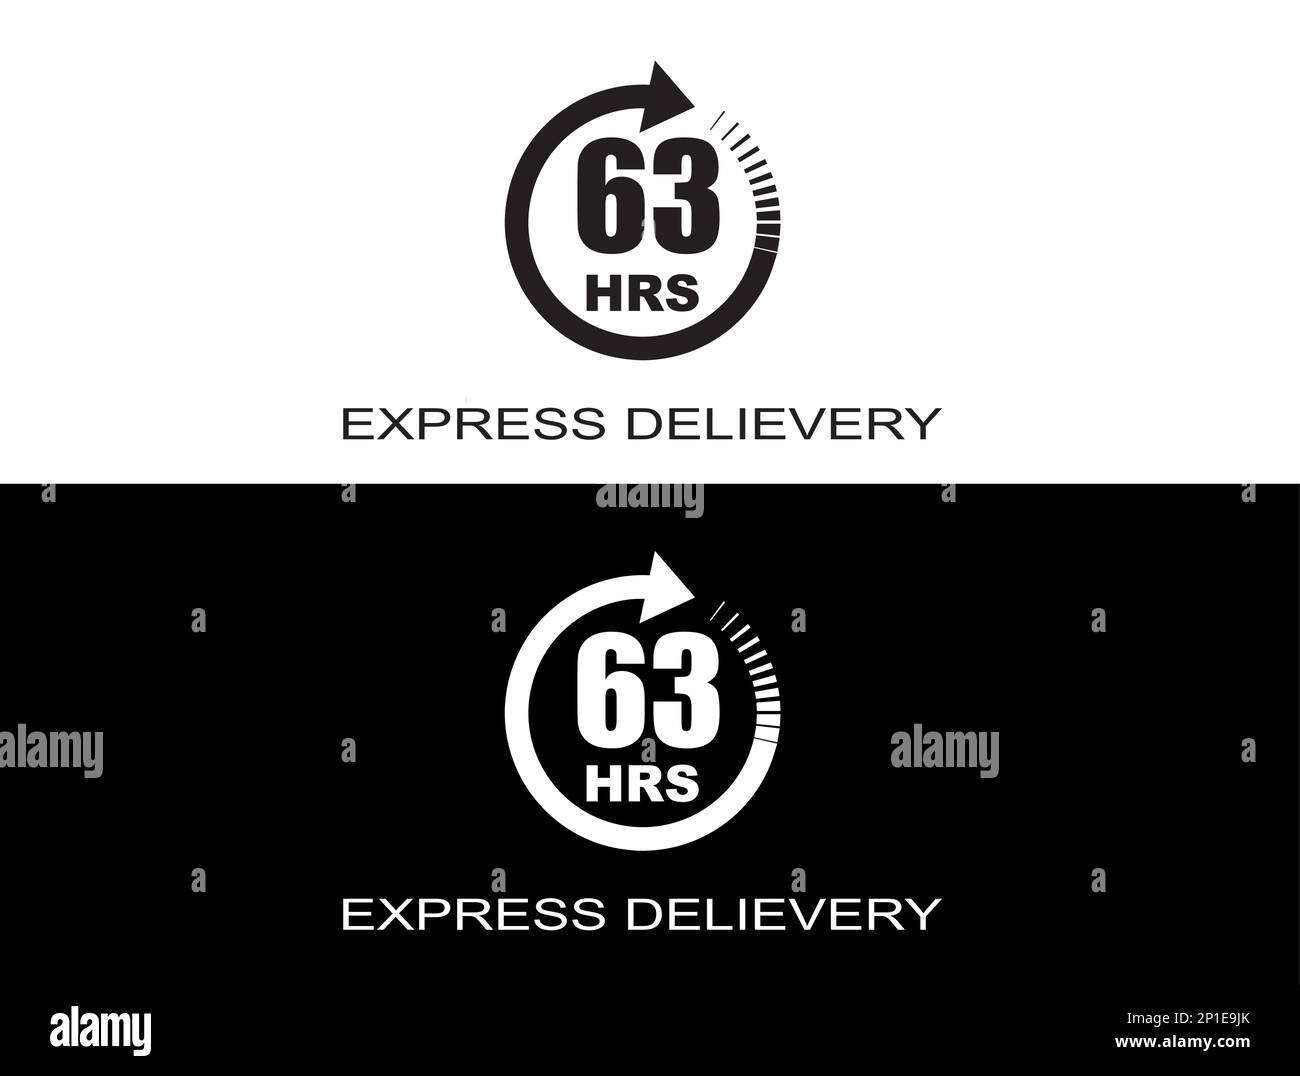 Expresslieferung in 63 Stunden. Schnelle Lieferung, Expressversand und dringender Versand Stock Vektor